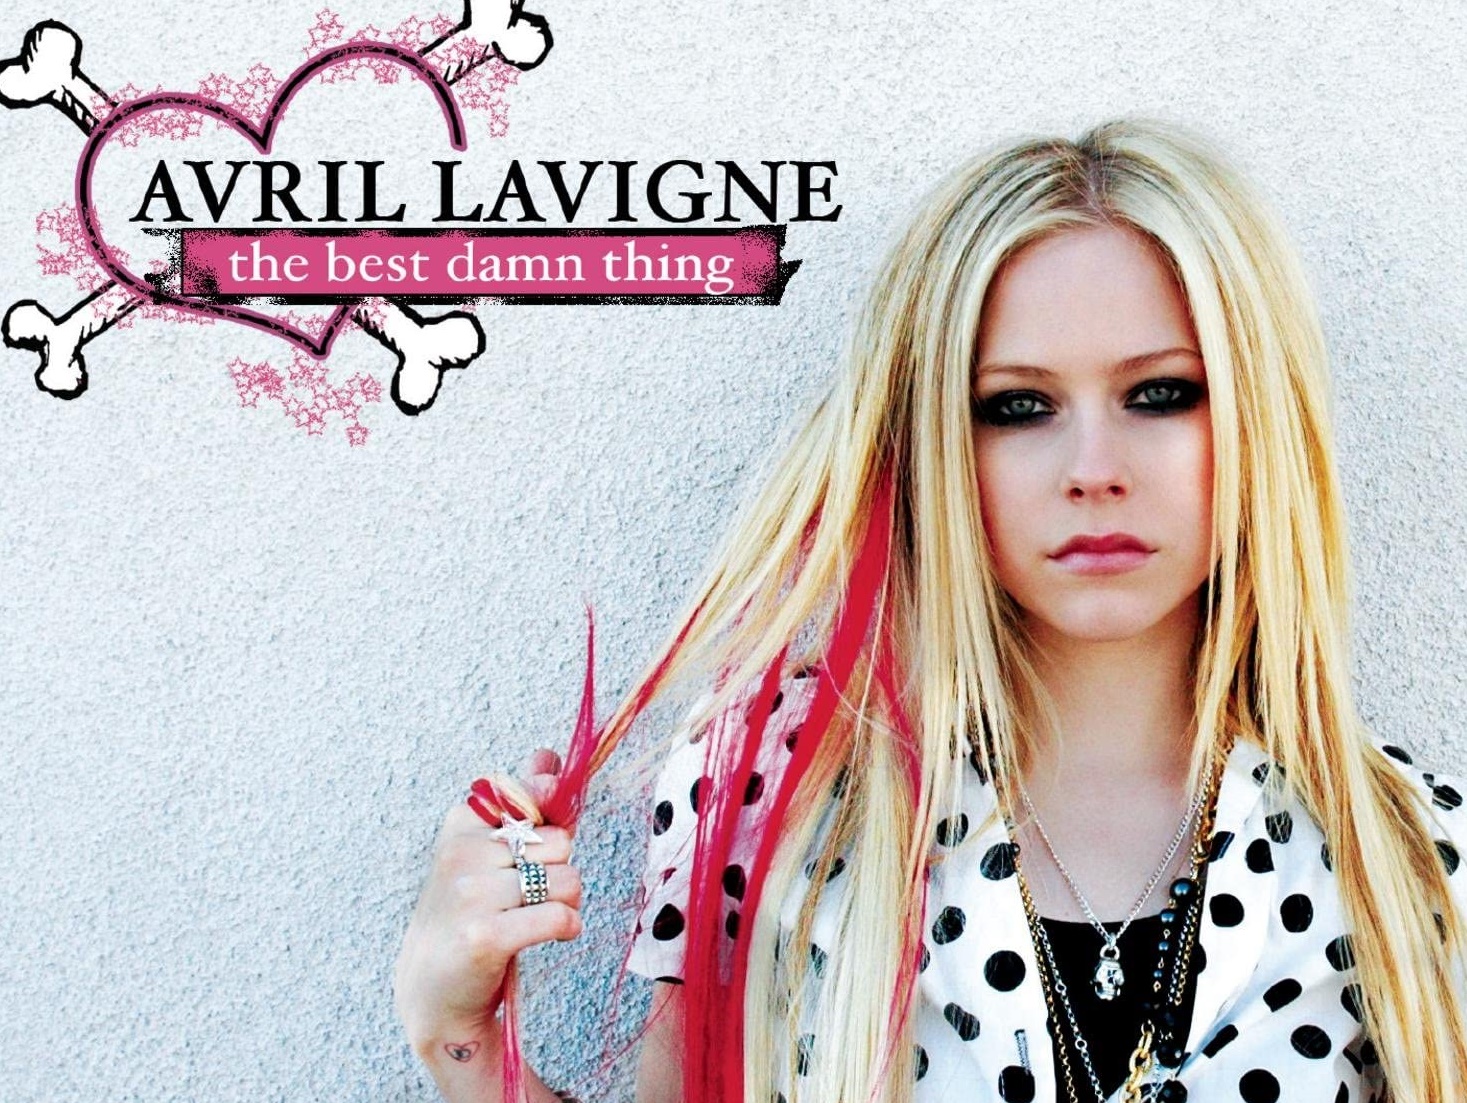 TBT Mais Goiás: The Best Damn Thing e a rebeldia cor de rosa de Avril Lavigne